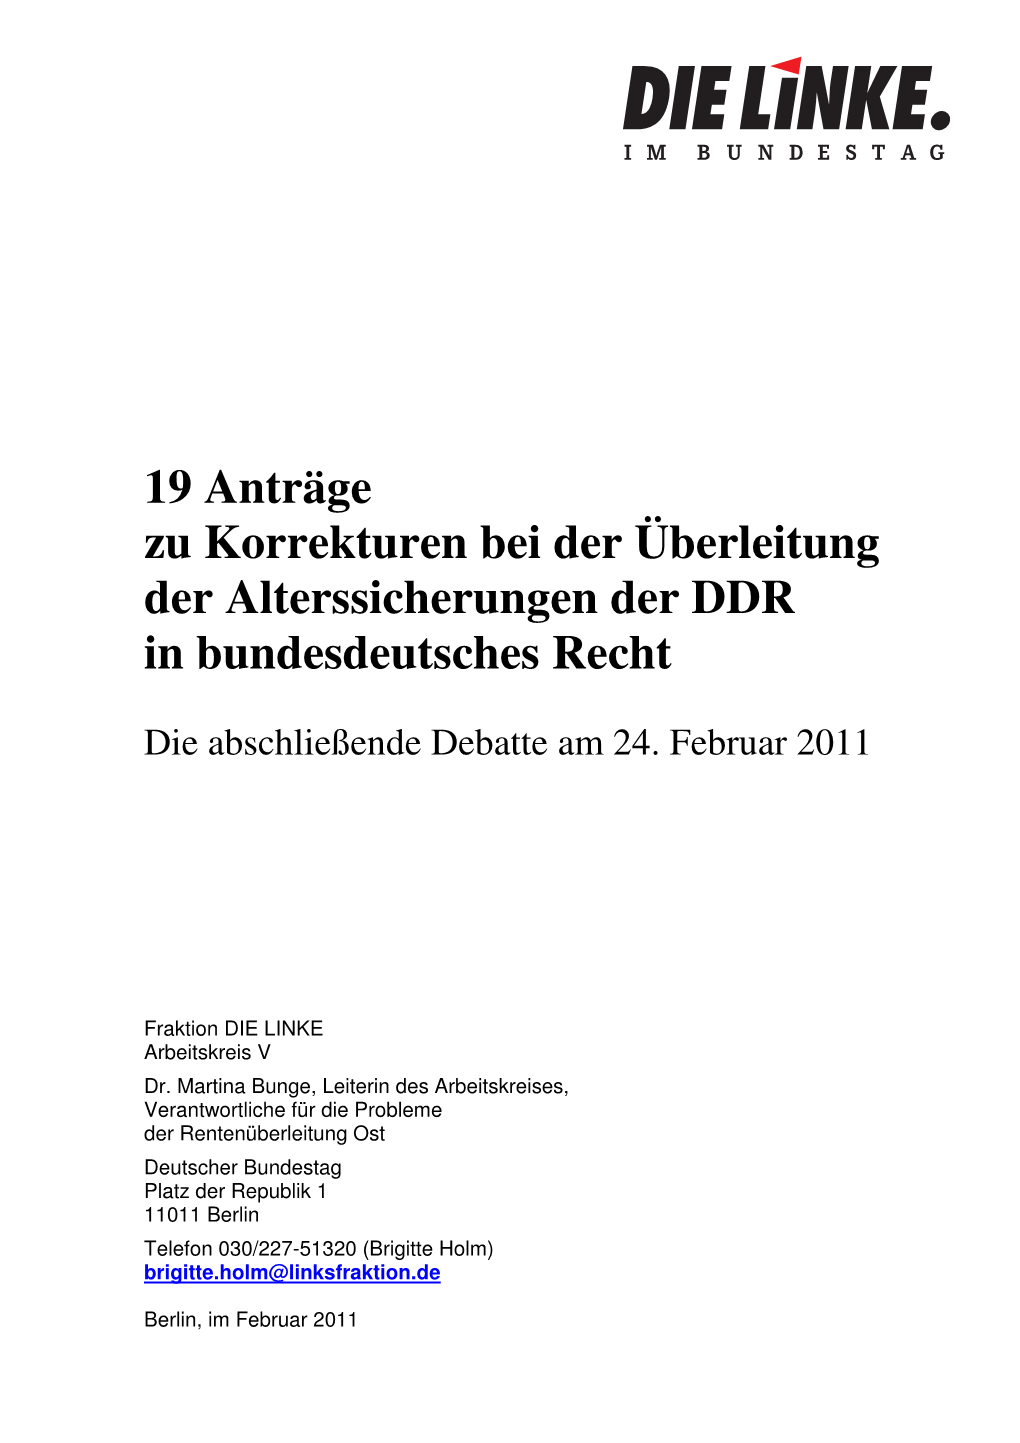 19 Anträge Zu Korrekturen Bei Der Überleitung Der Alterssicherungen Der DDR in Bundesdeutsches Recht